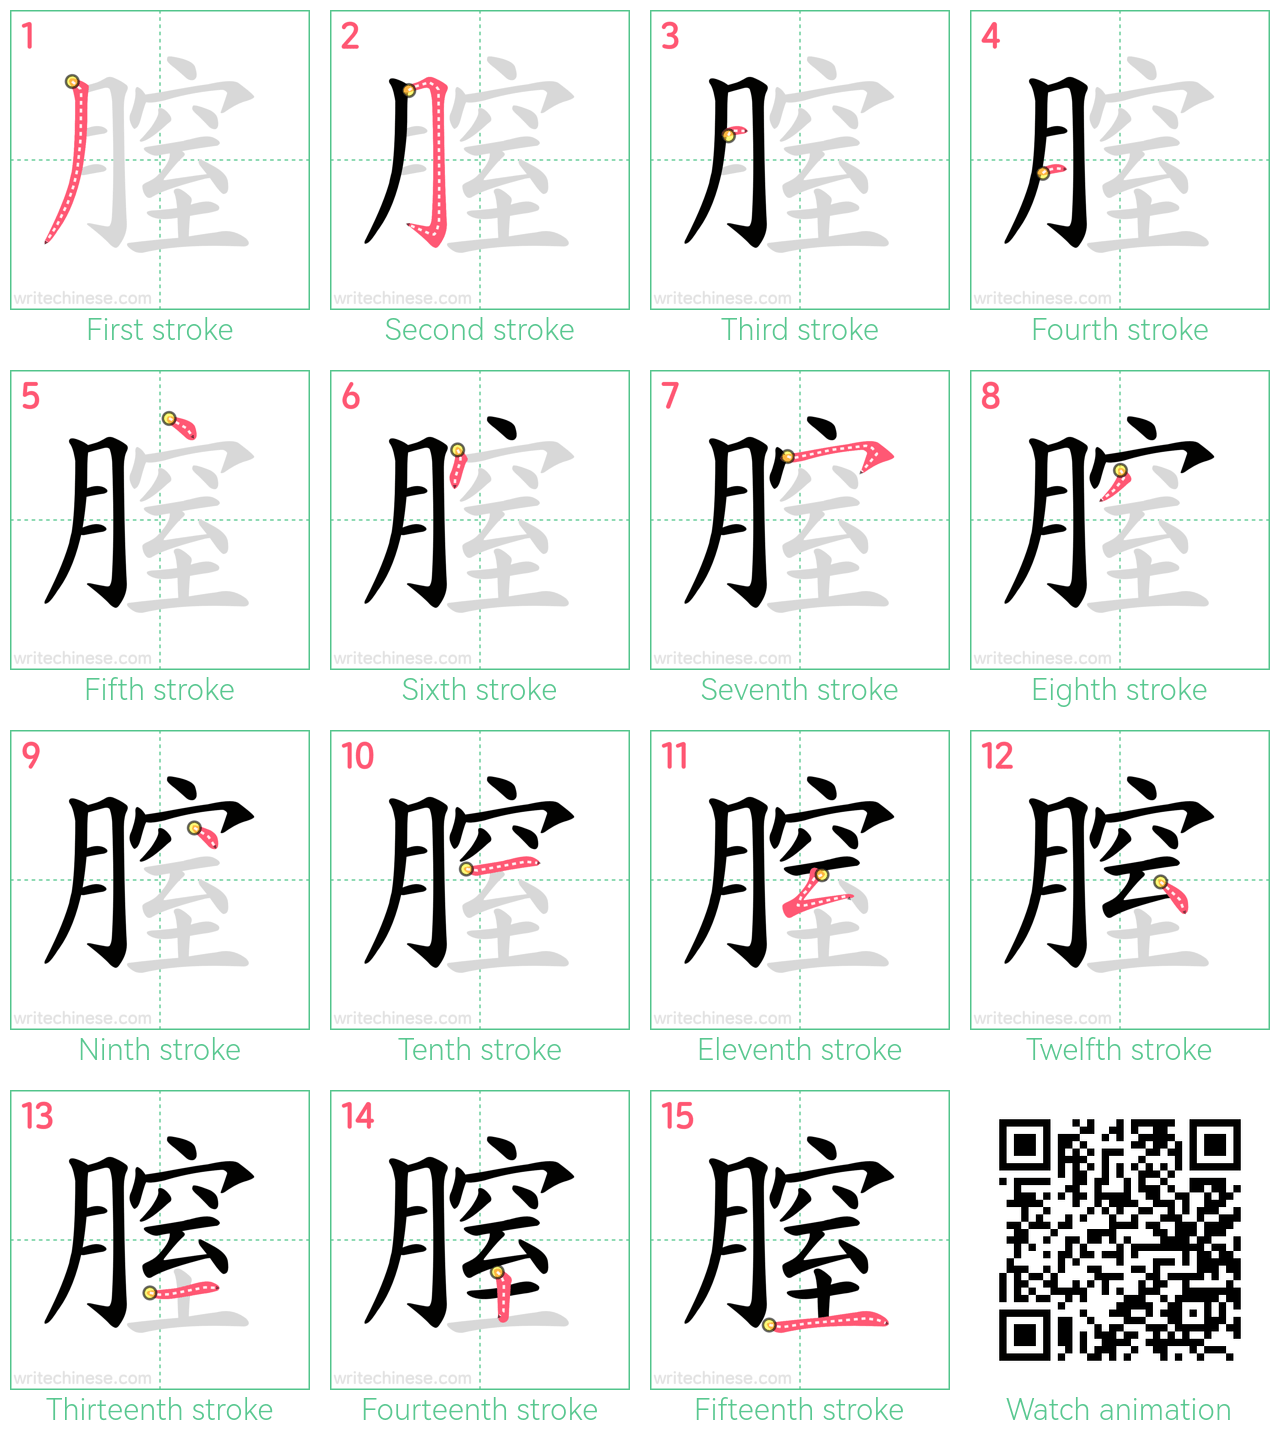 膣 step-by-step stroke order diagrams